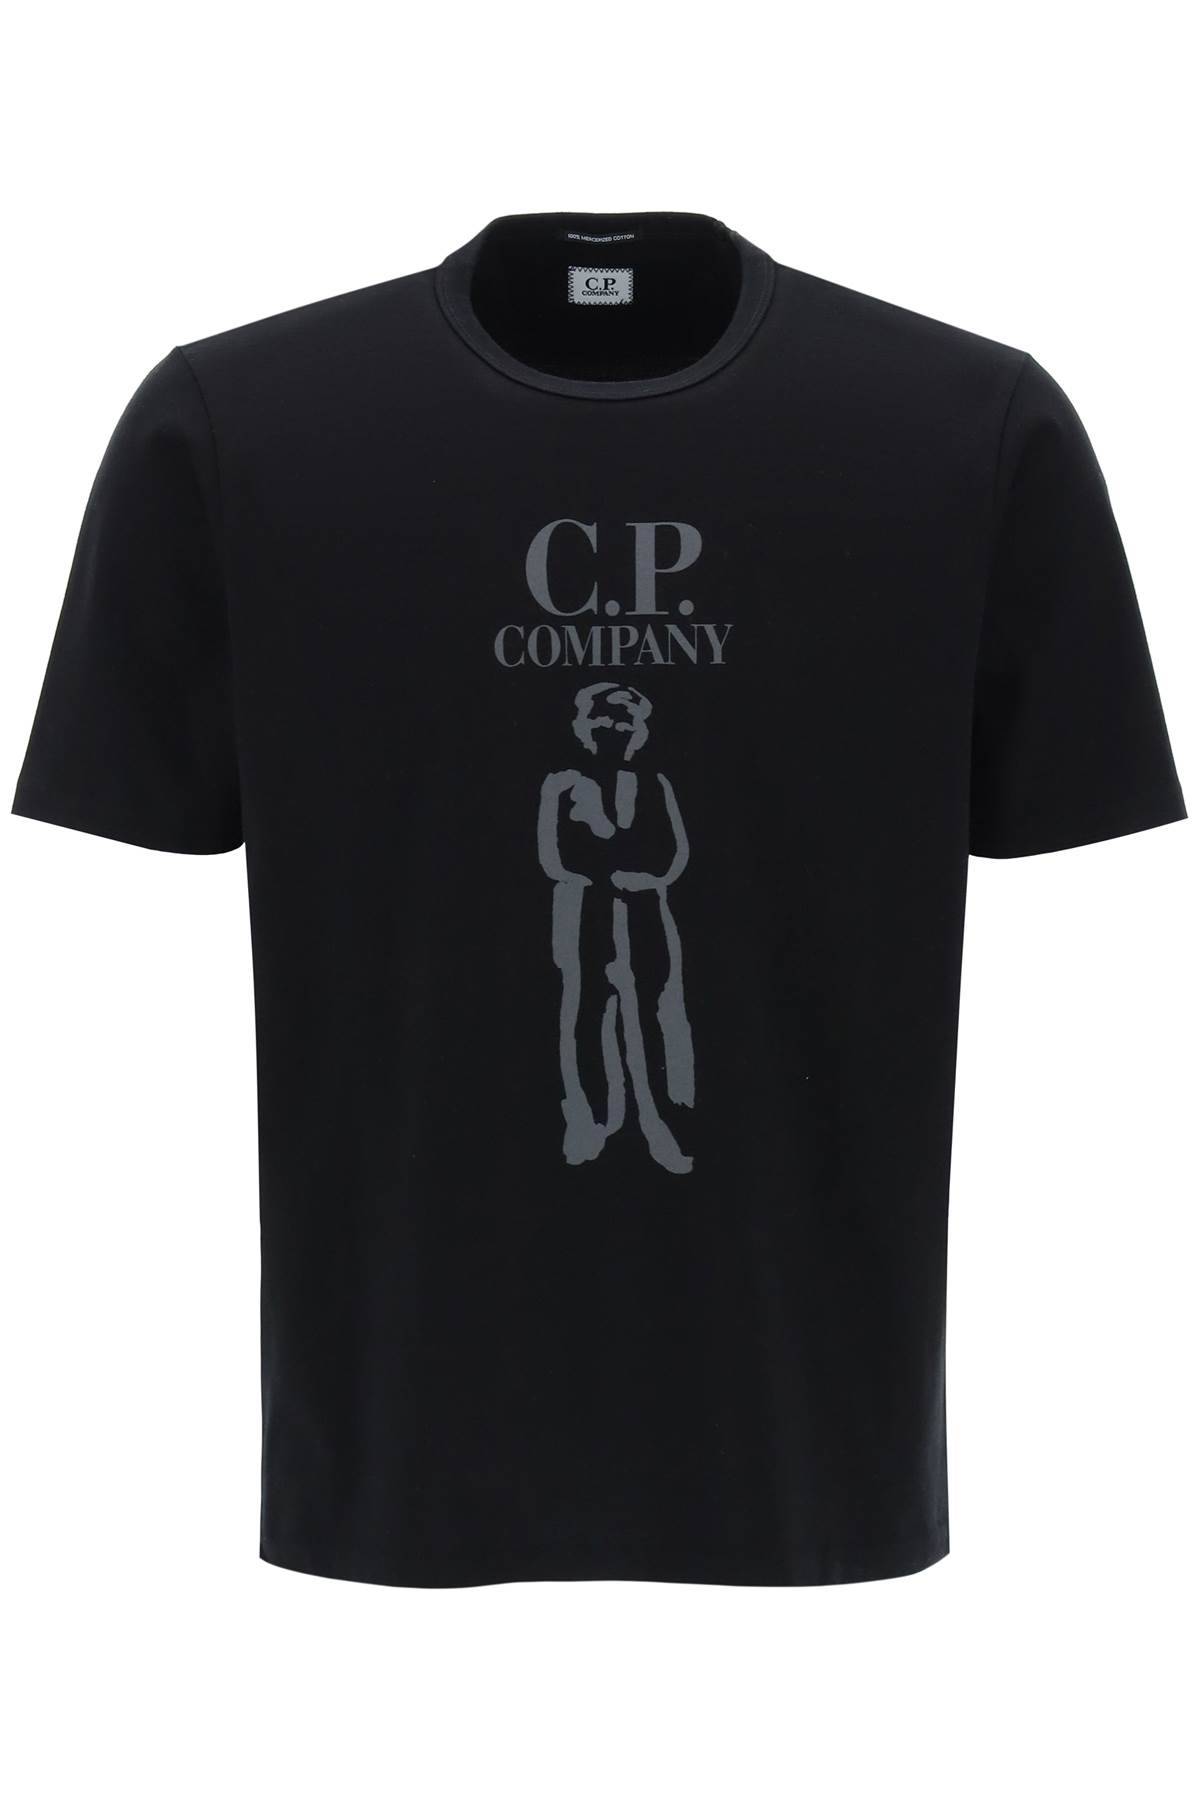 CP COMPANY CP COMPANY printed british sailor t-shirt